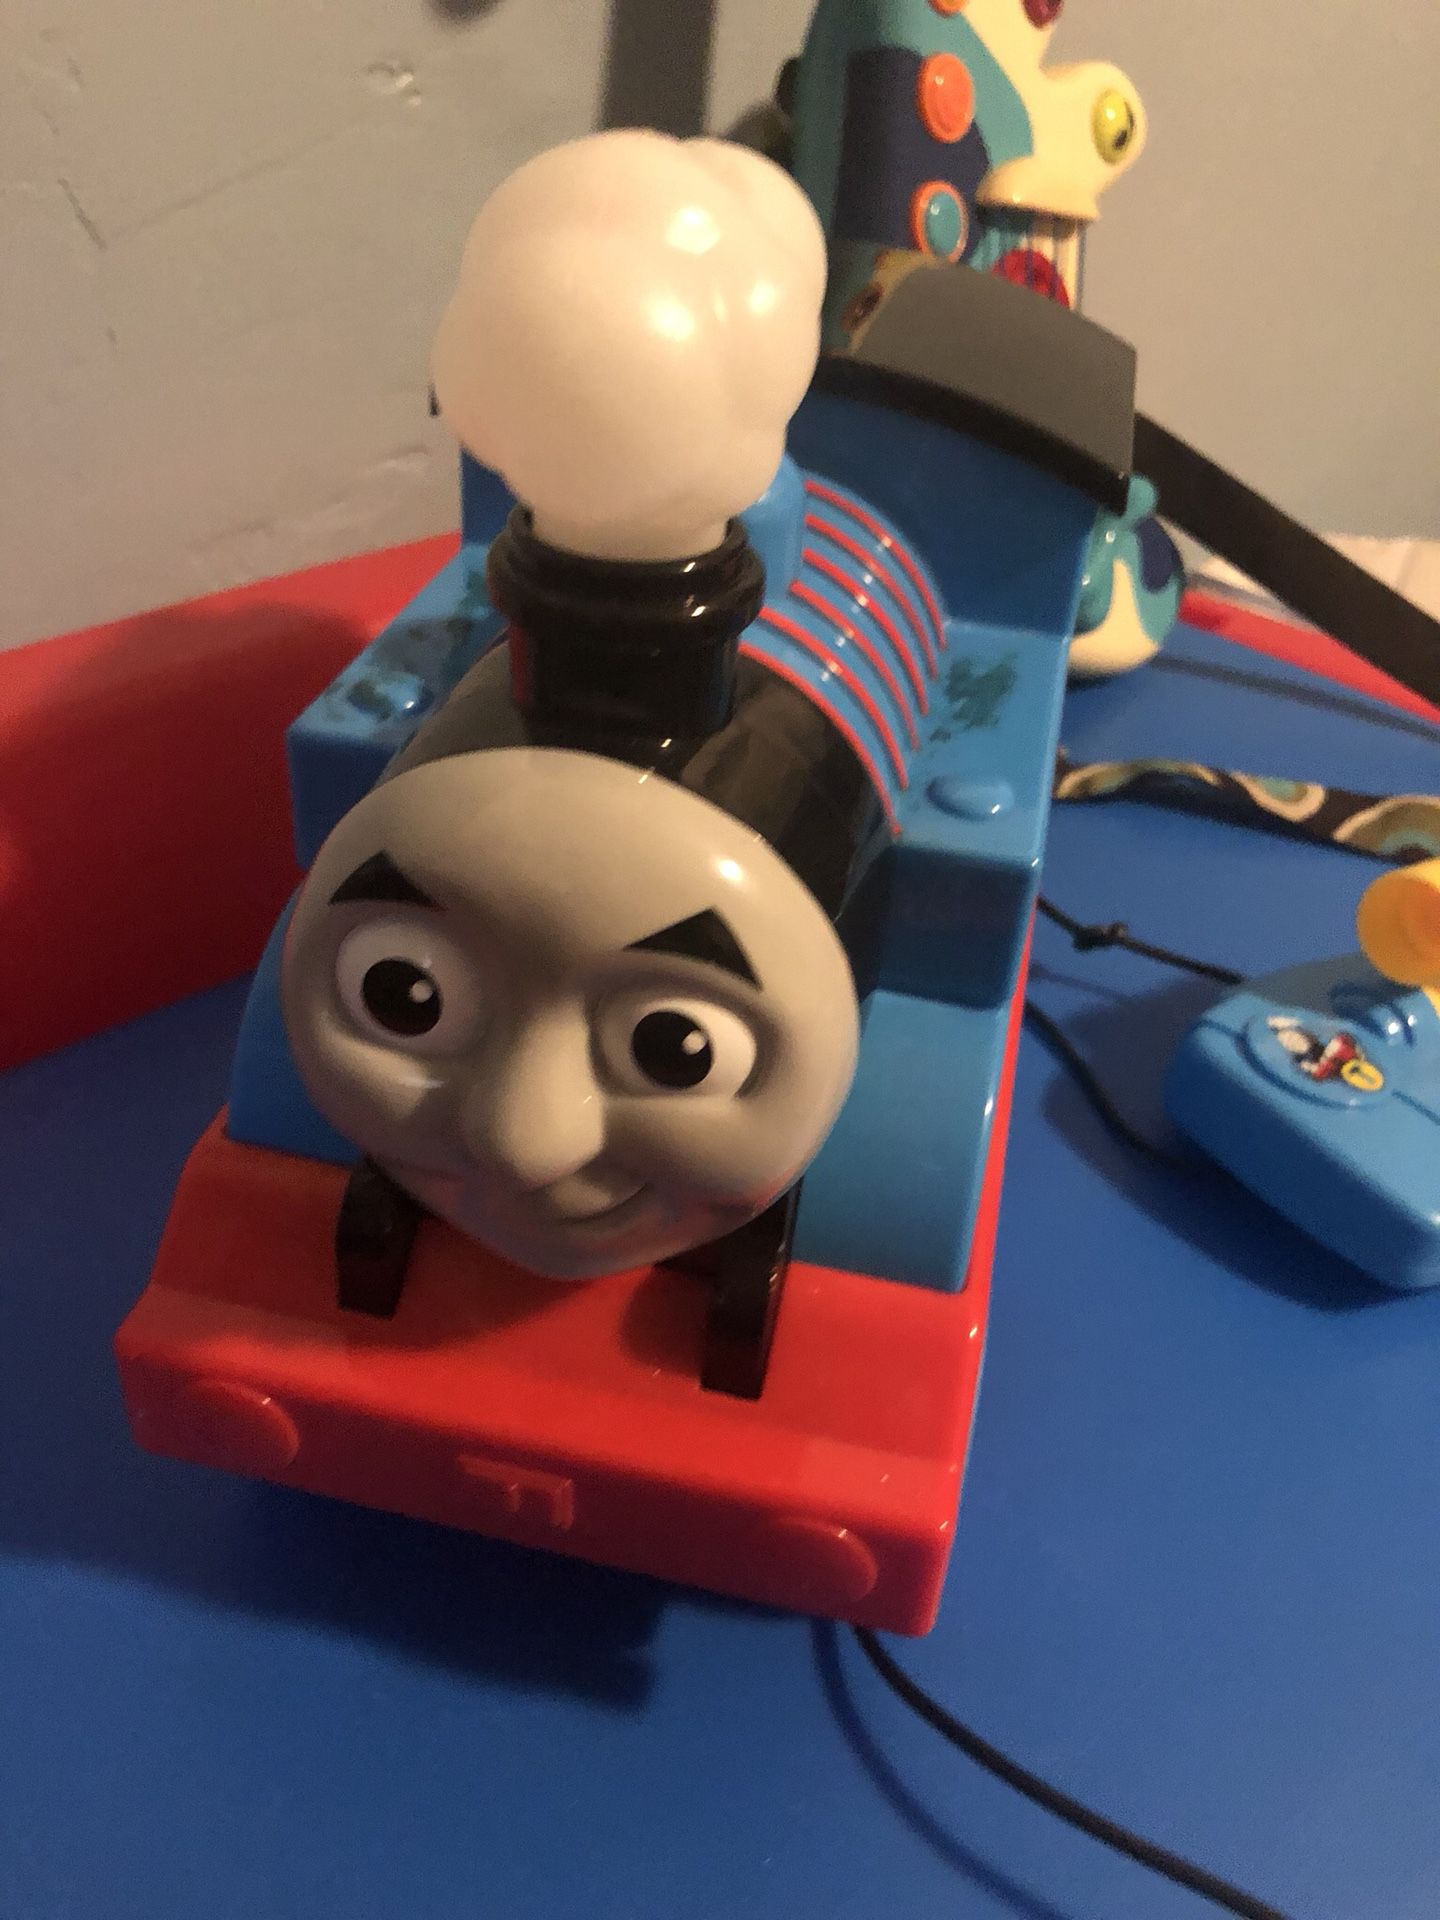 Thomas the train remote control